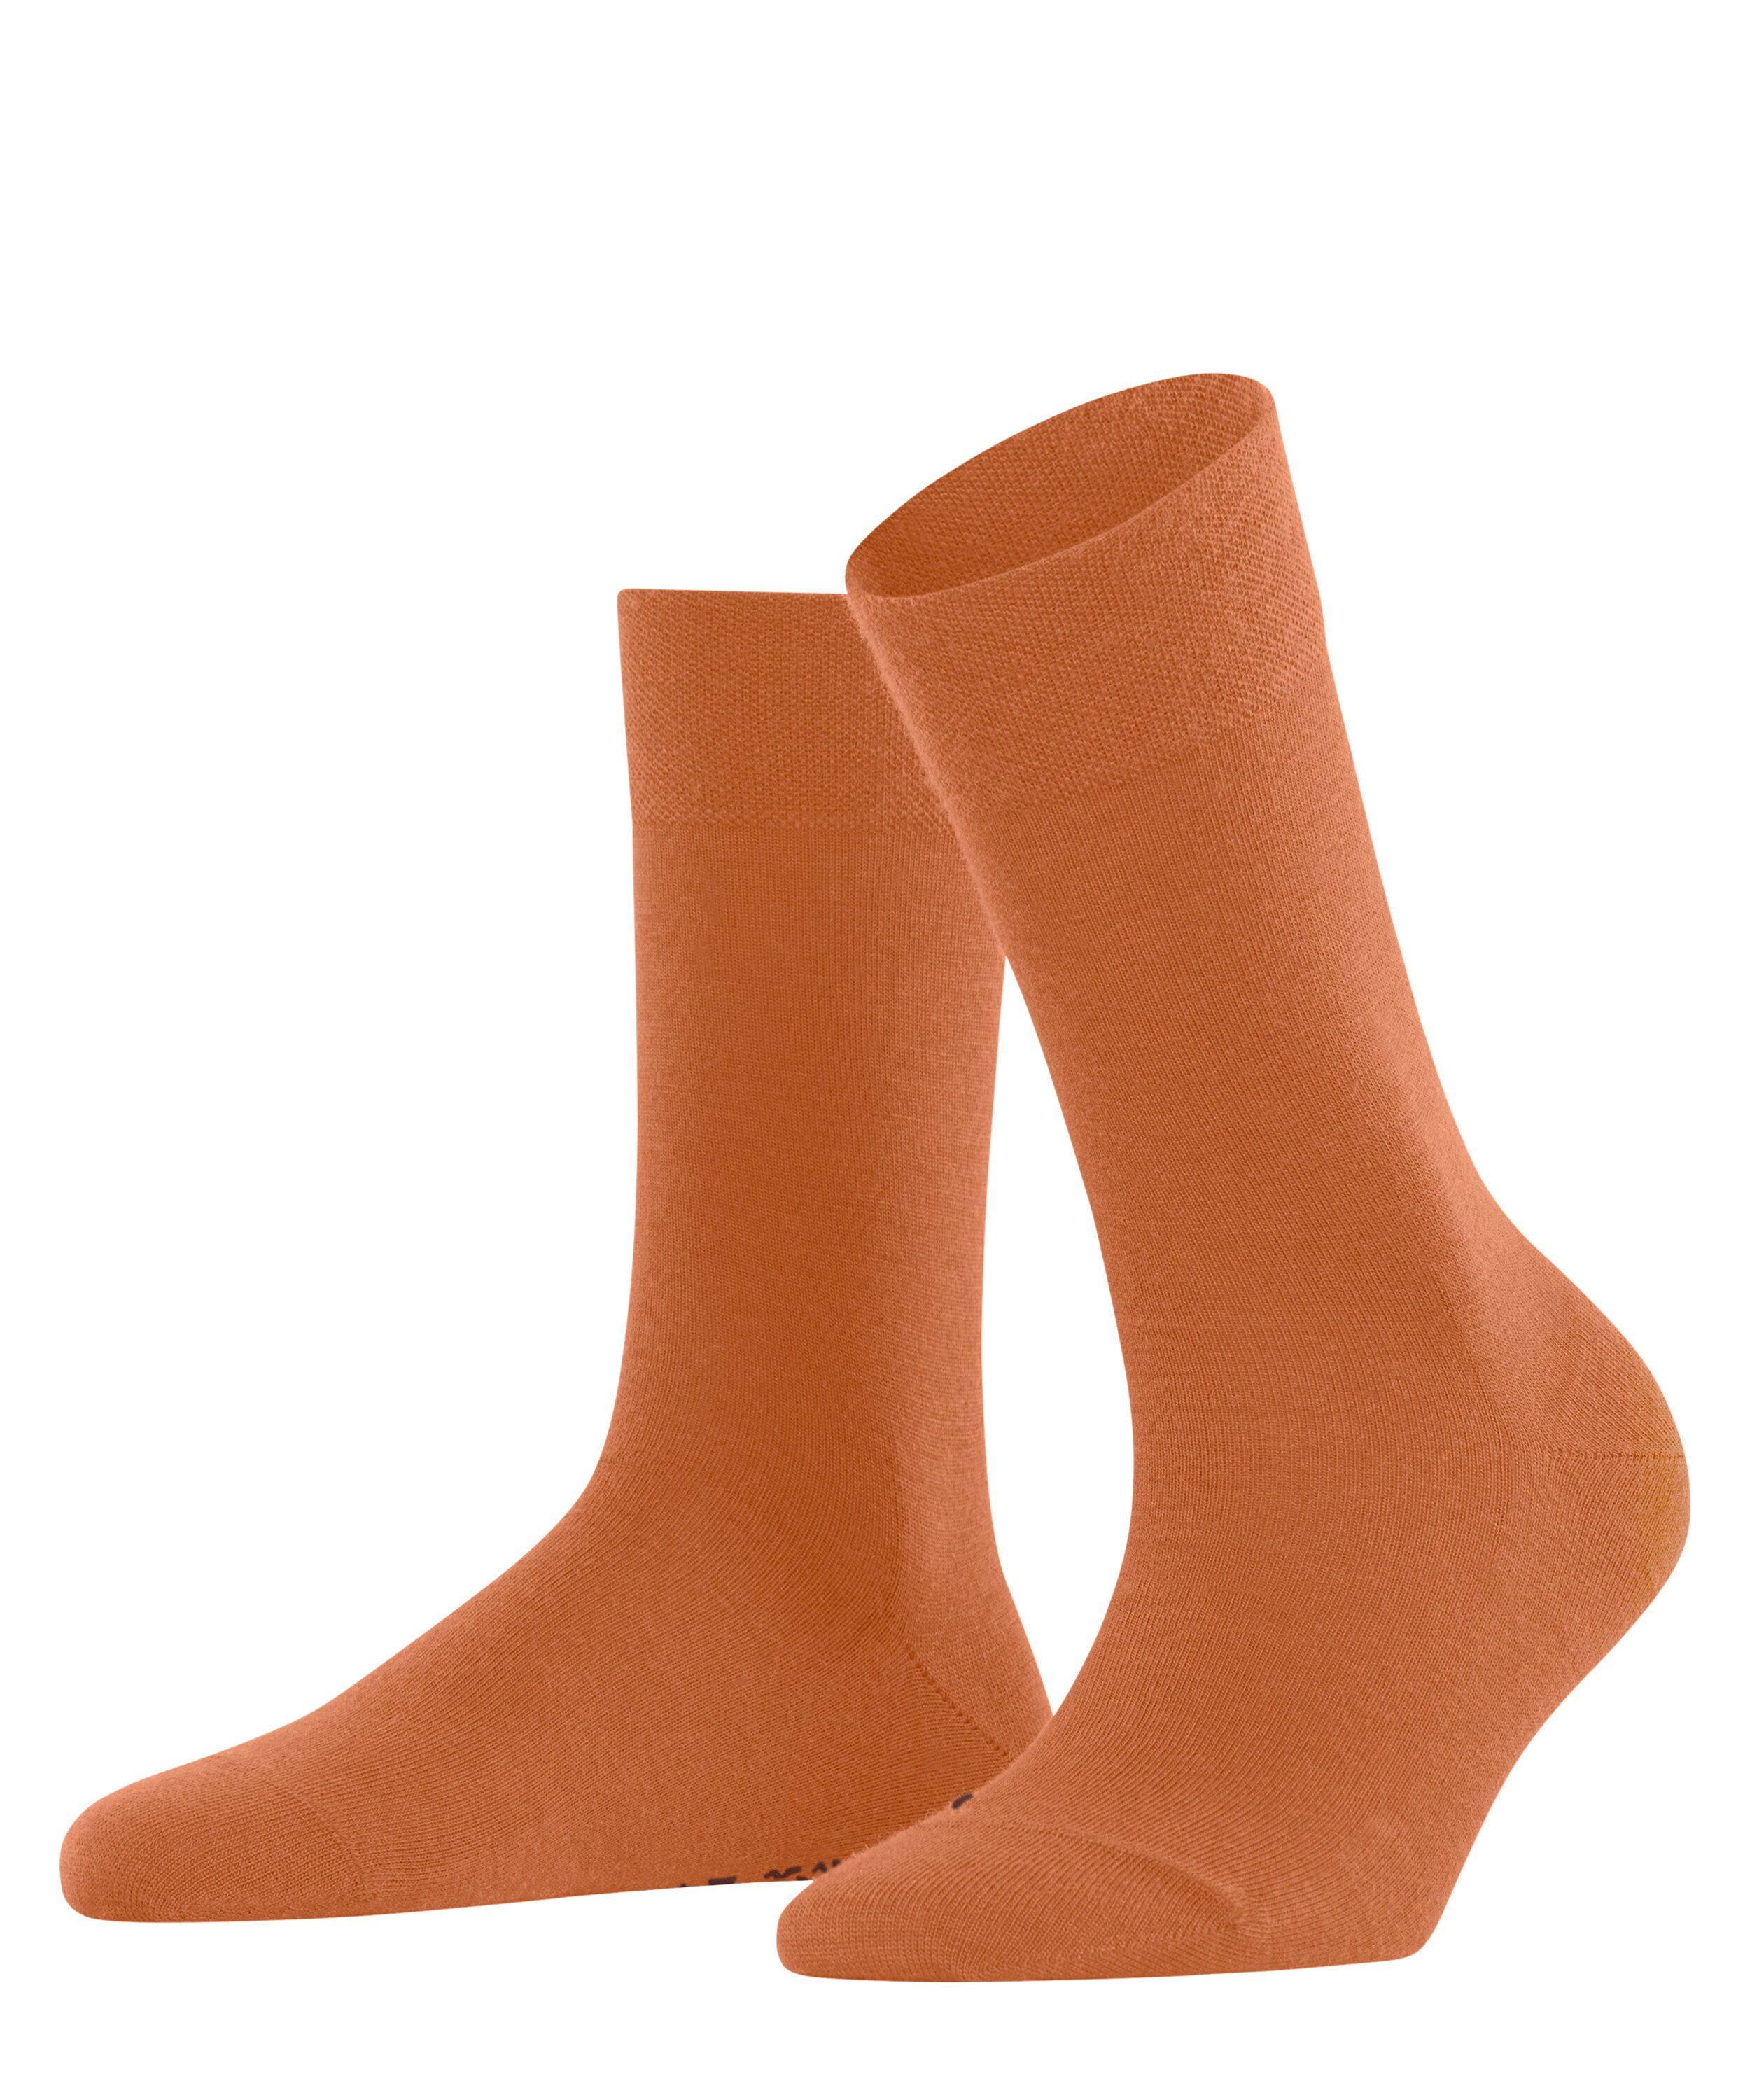 FALKE Socken Sensitive Berlin (1-Paar) tandoori (8576)